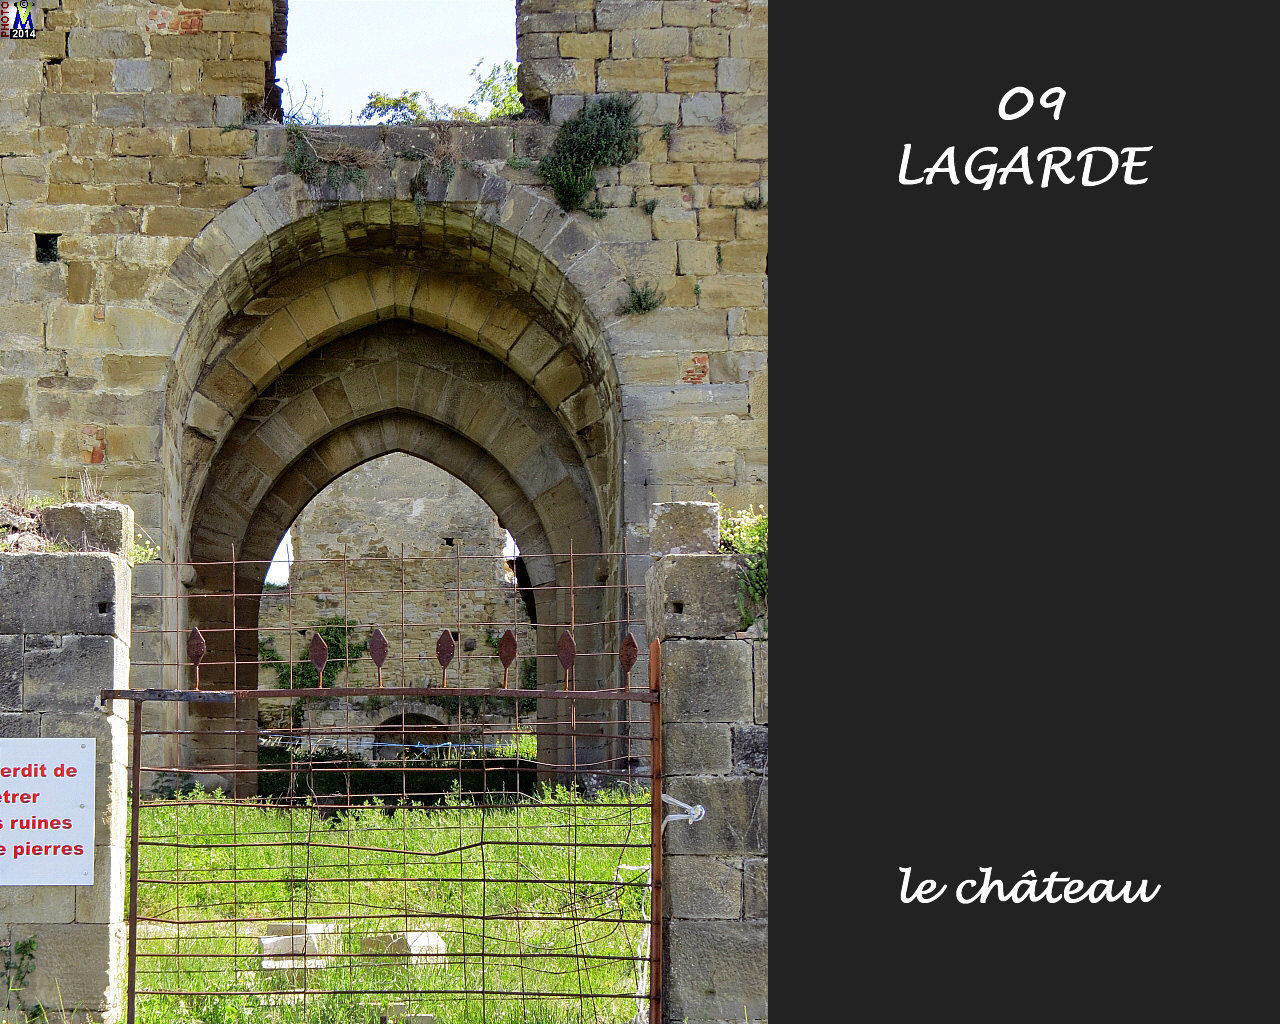 09LAGARDE_chateau_134.jpg